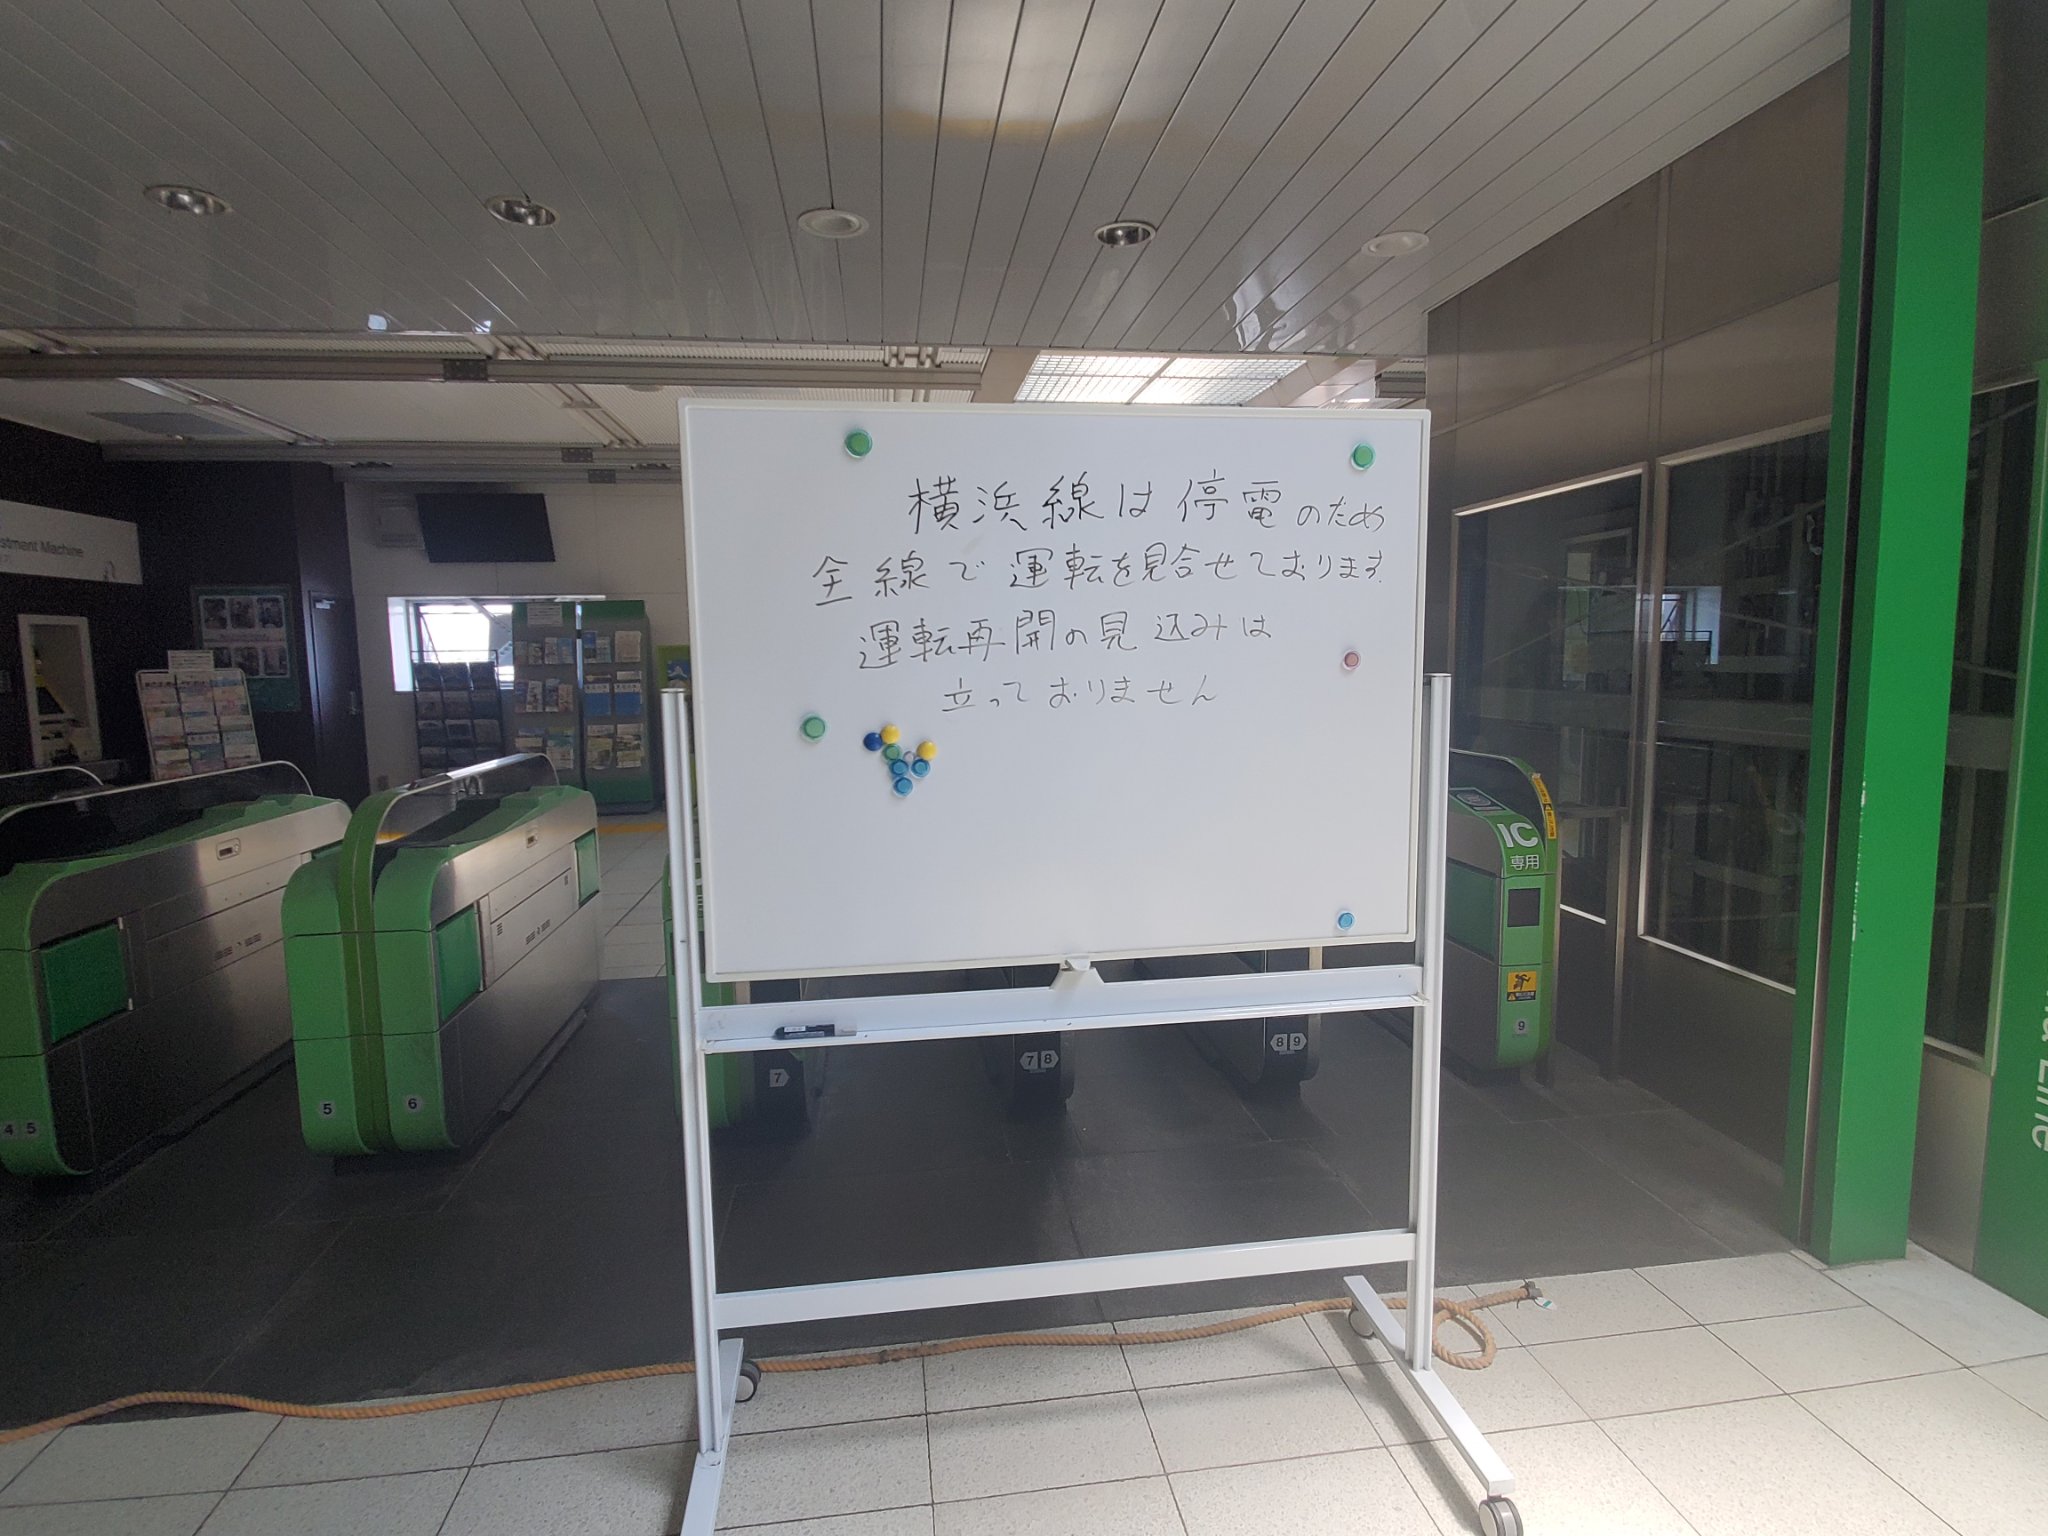 【悲報】横浜線長津田駅の入場制限は鉄道ファンのせい? 甲種輸送目当てに殺到か